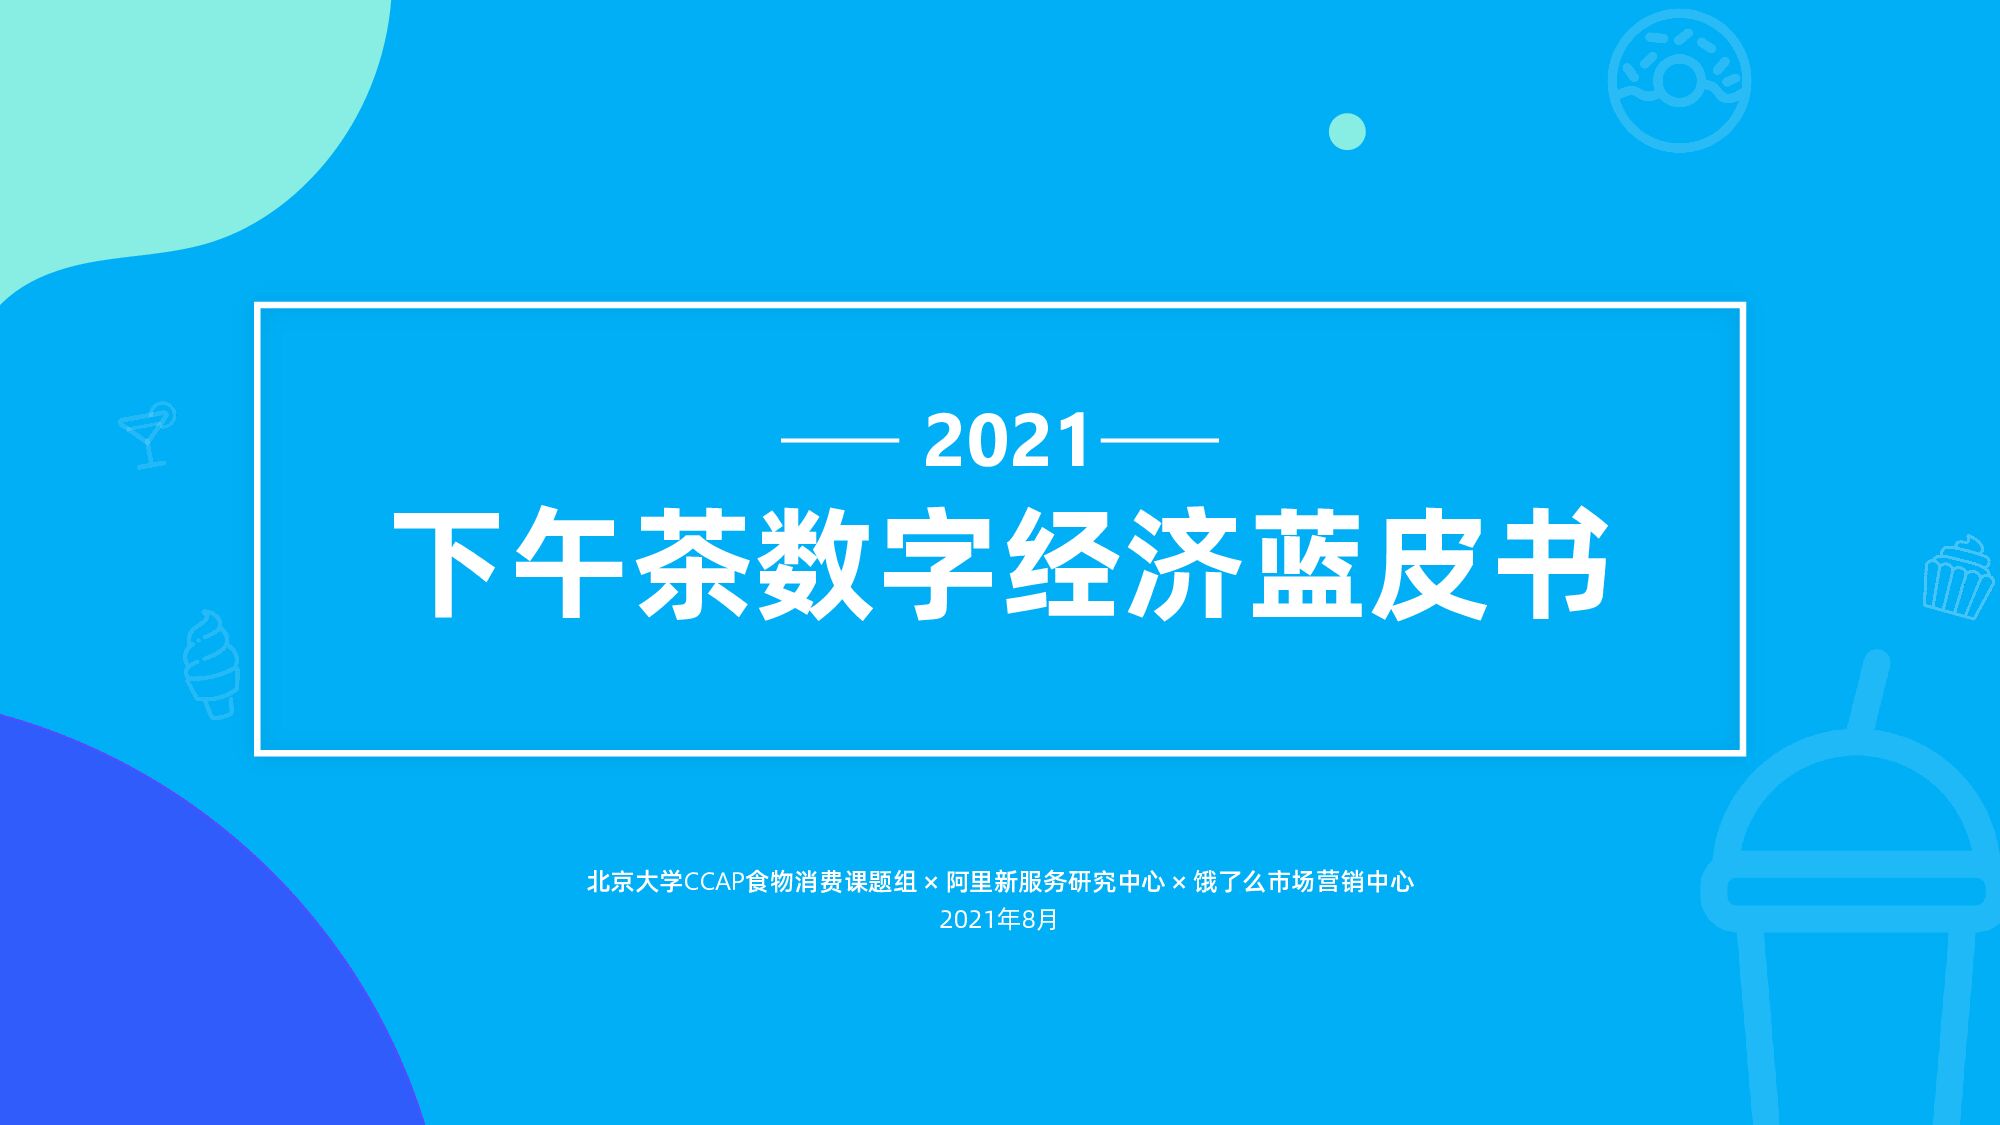 新服务研究中心《2021下午茶数字经济蓝皮书》